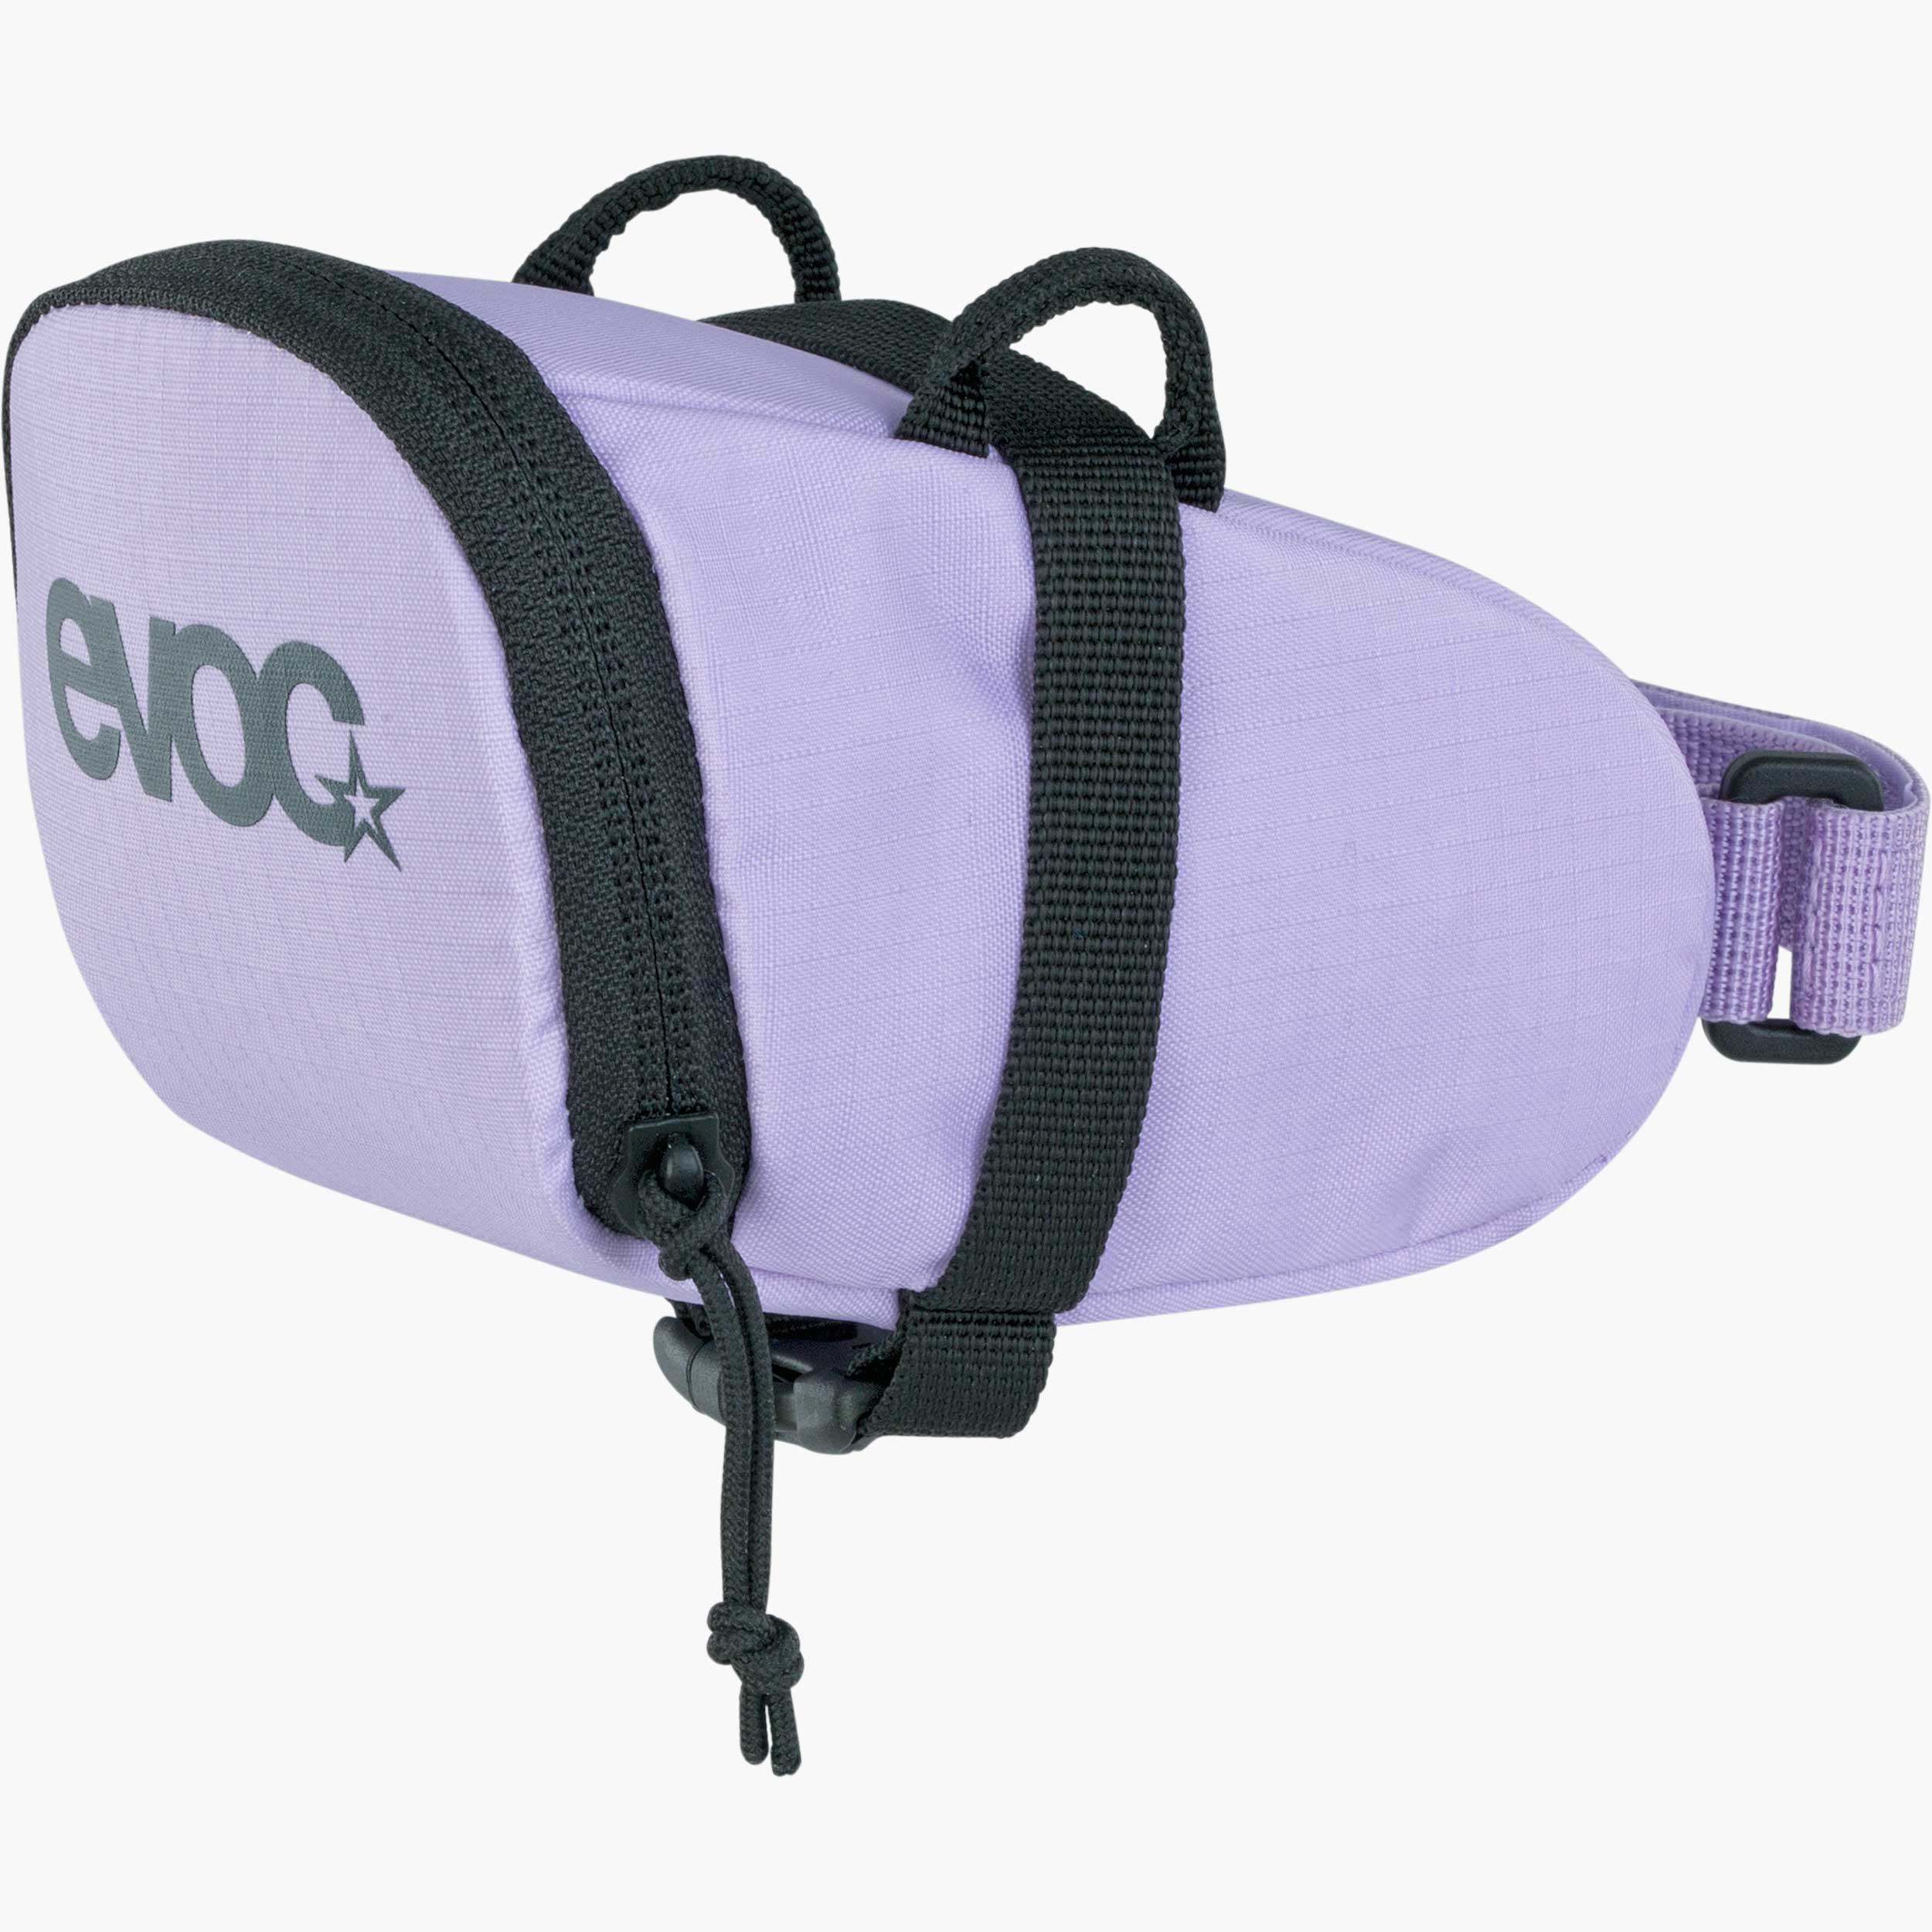 SEAT Bag Tour und SEAT Pack BOA EVOC Bike Packing Fahrrad-Satteltaschen SEAT Bag kompakte Fahrrad-Transporttaschen mit praktischen Features für den Sattel Größen